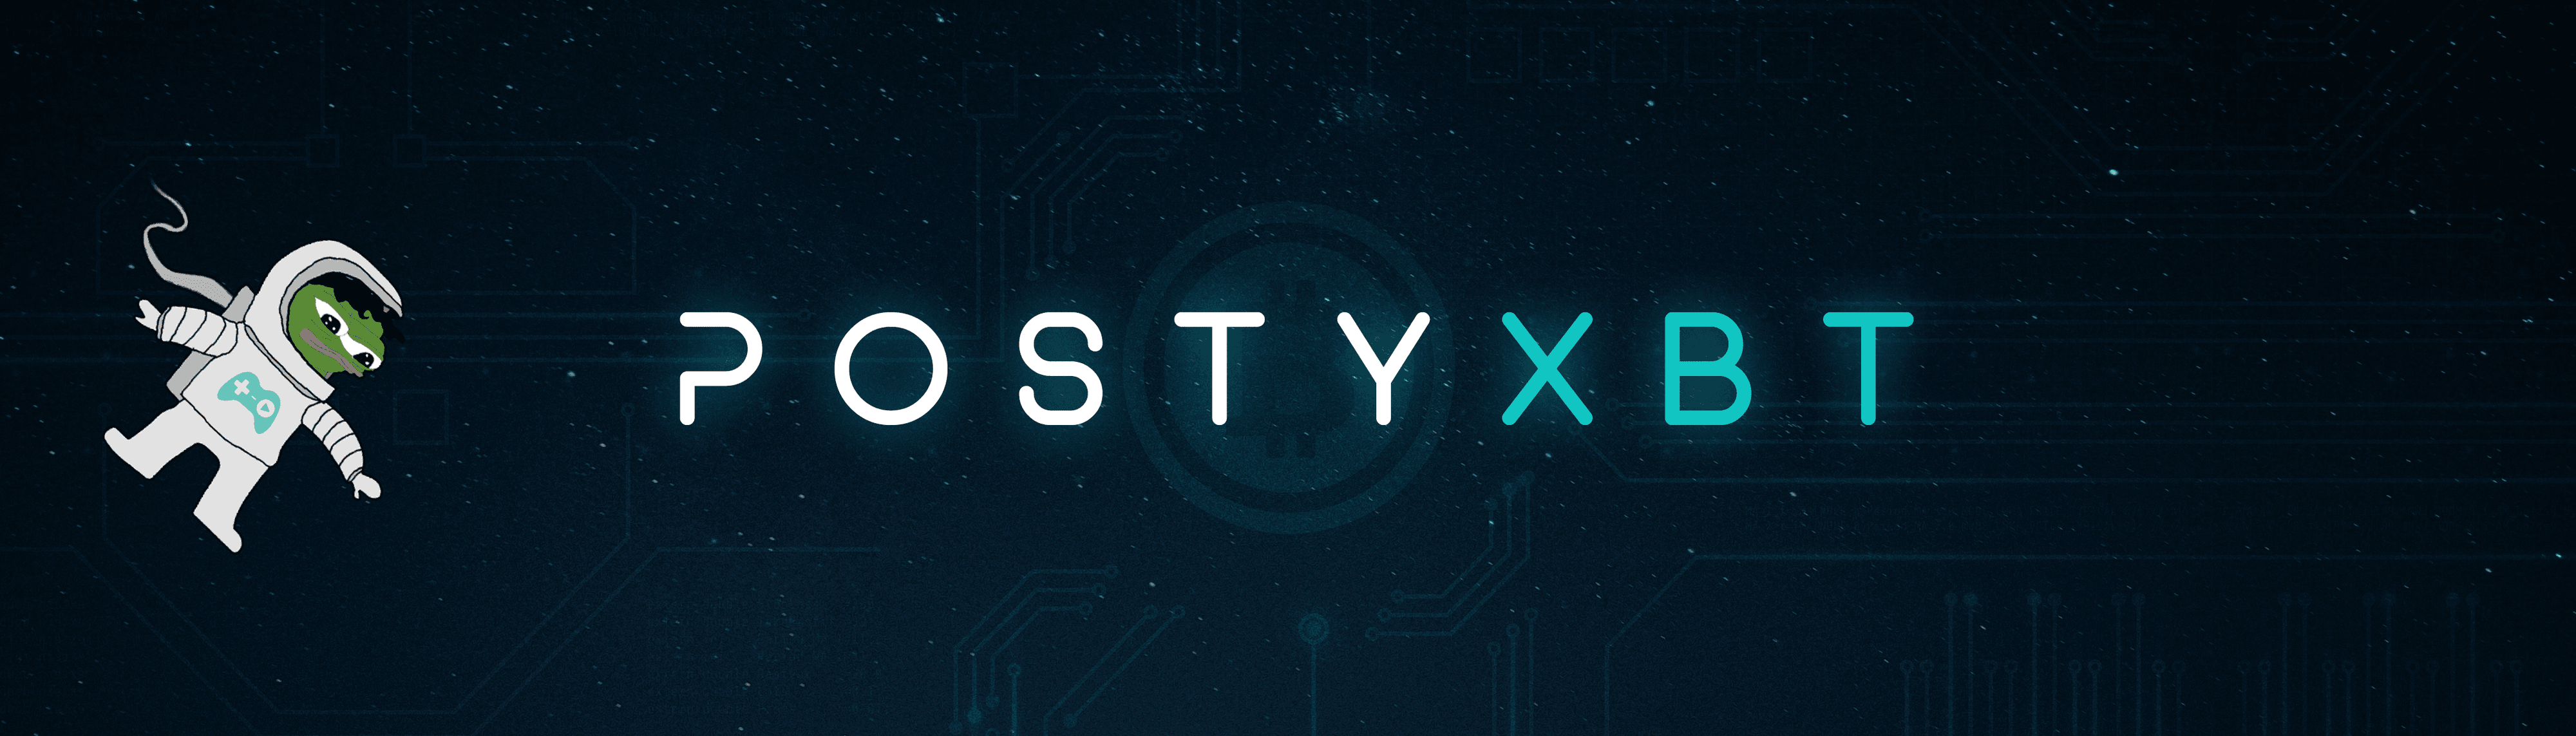 PostyXBT banner